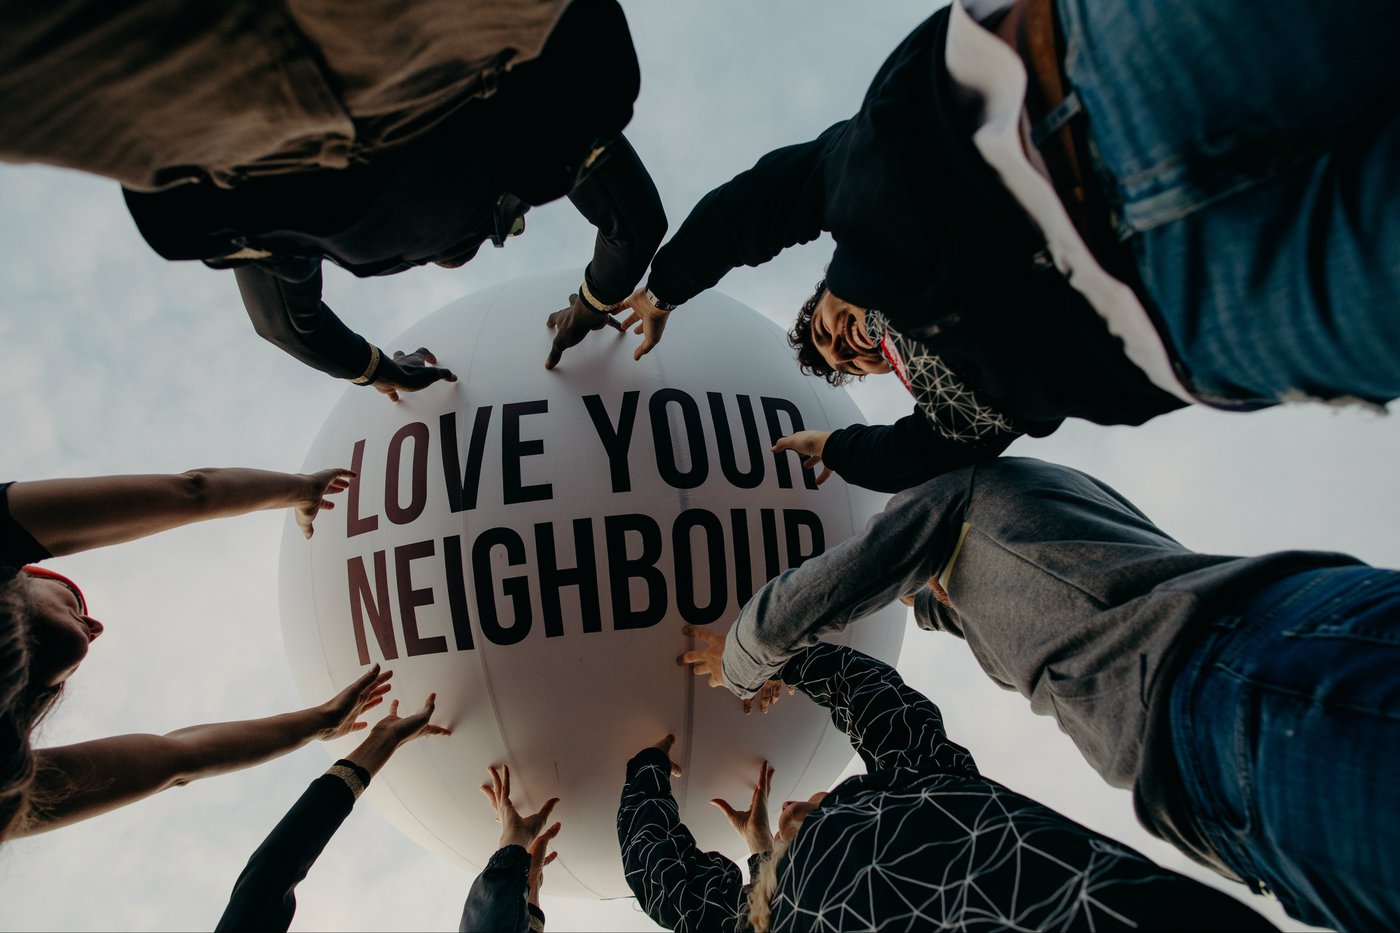 "Love thy neighbour" "გიყვარდეს შენი მეზობელი"